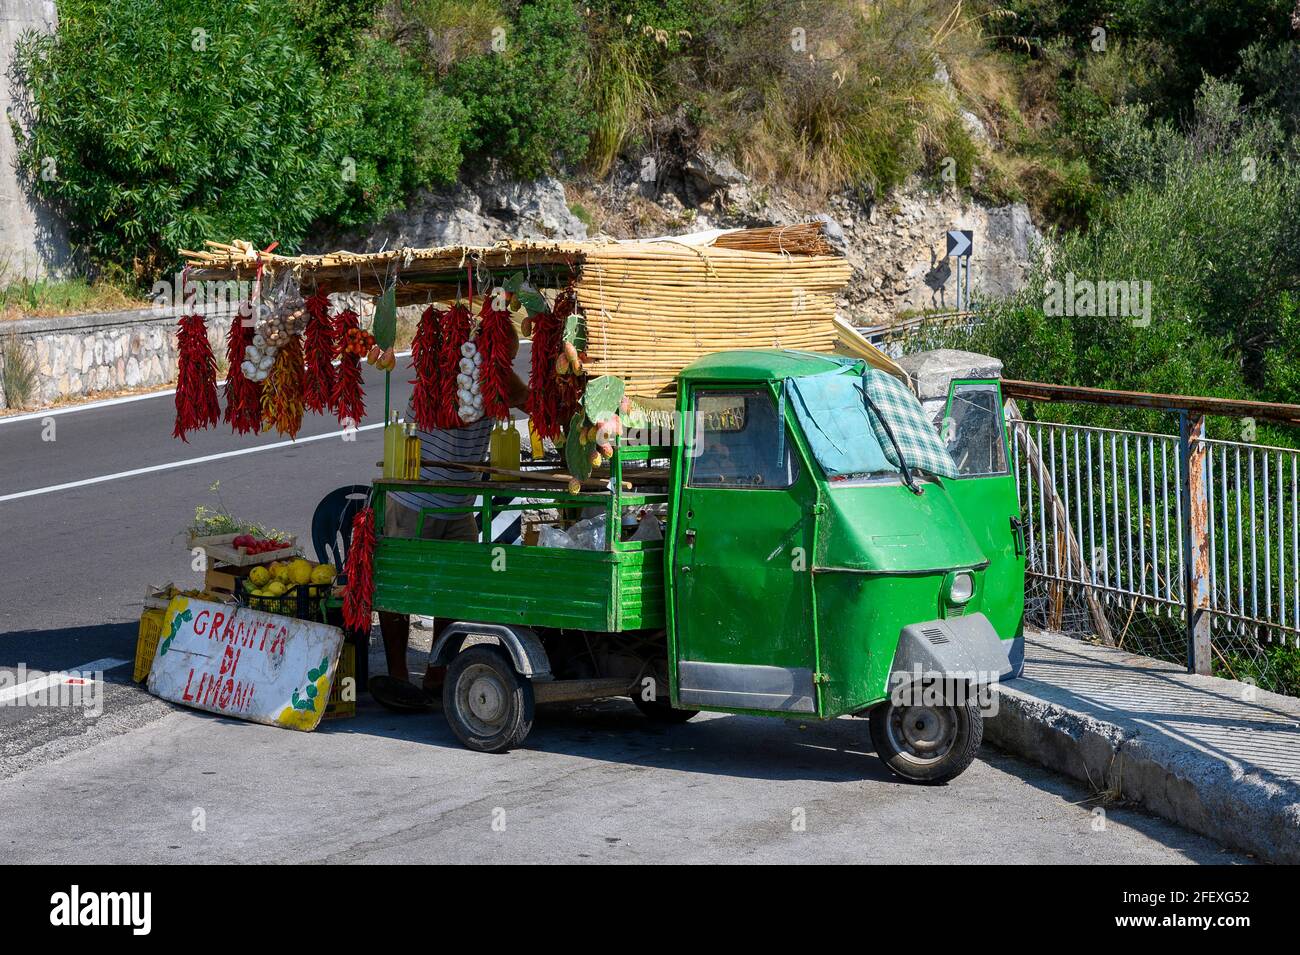 Ein kleiner mobiler Verkaufsstand am Straßenrand in Italien mit verschiedenen Obst- und Gemüsesorten. Stockfoto